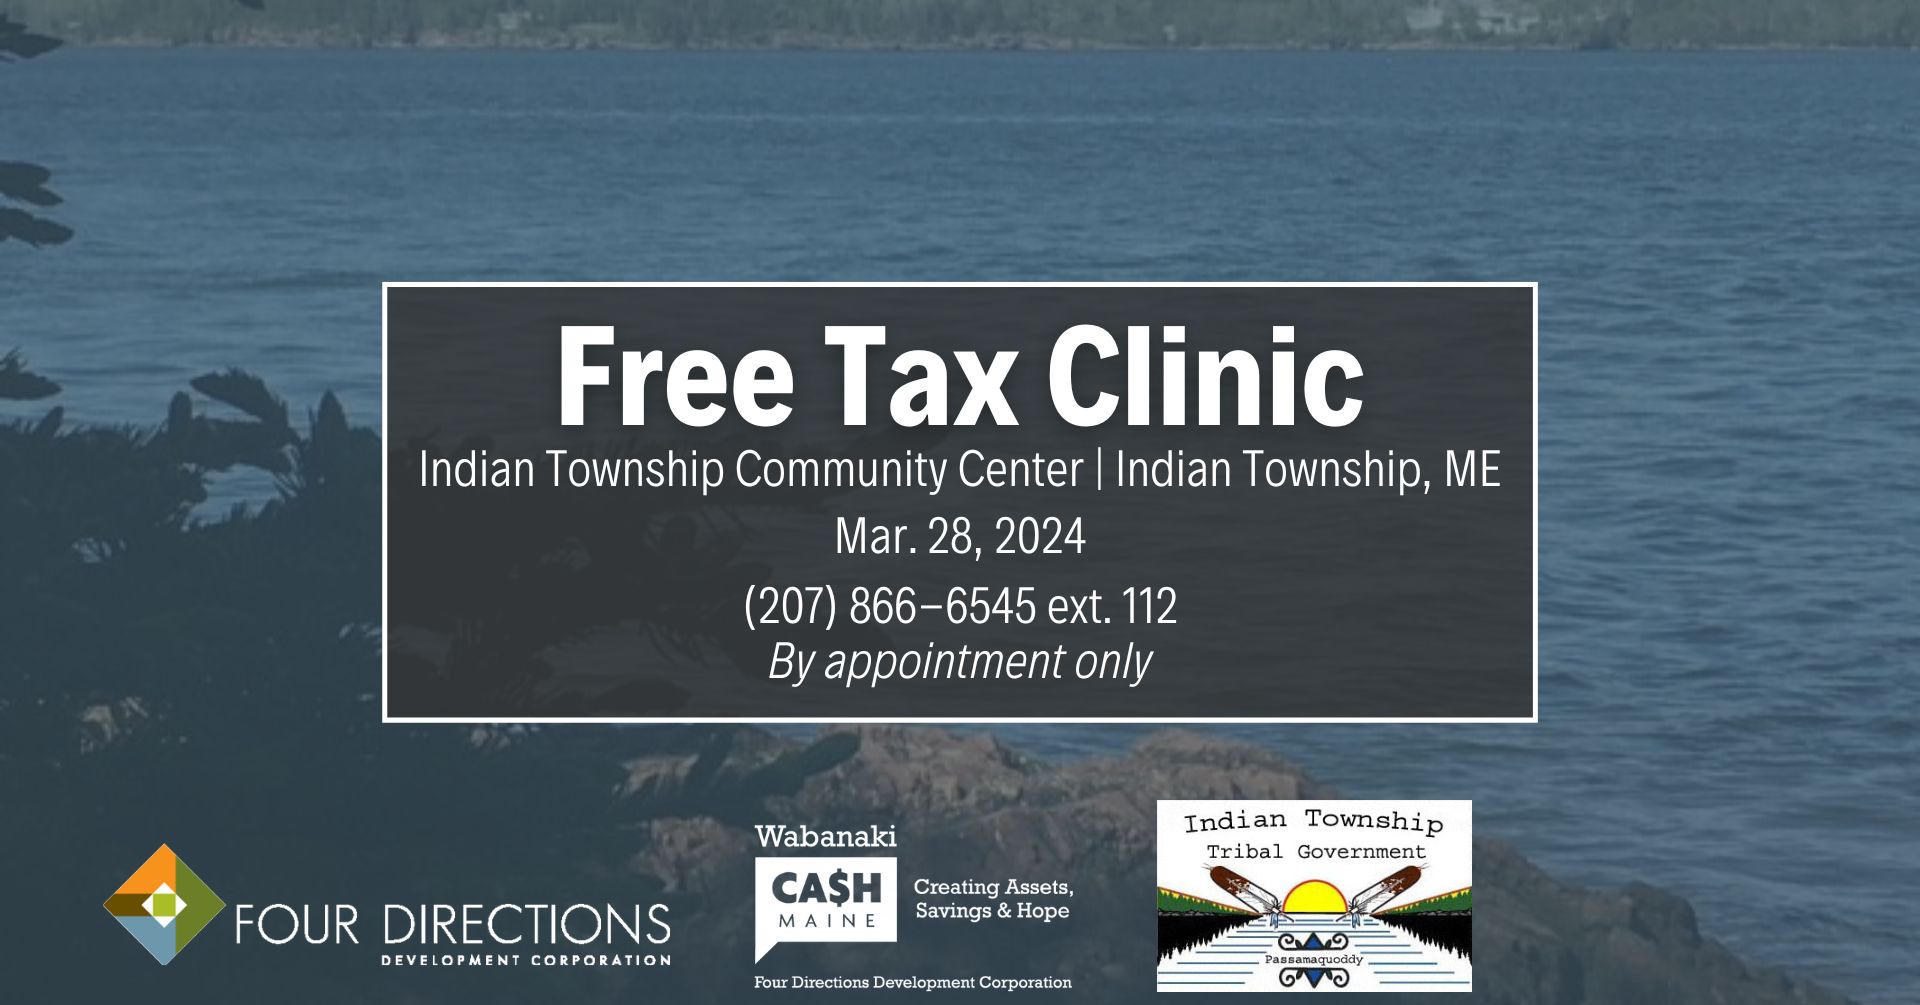 Free Tax Clinic IT